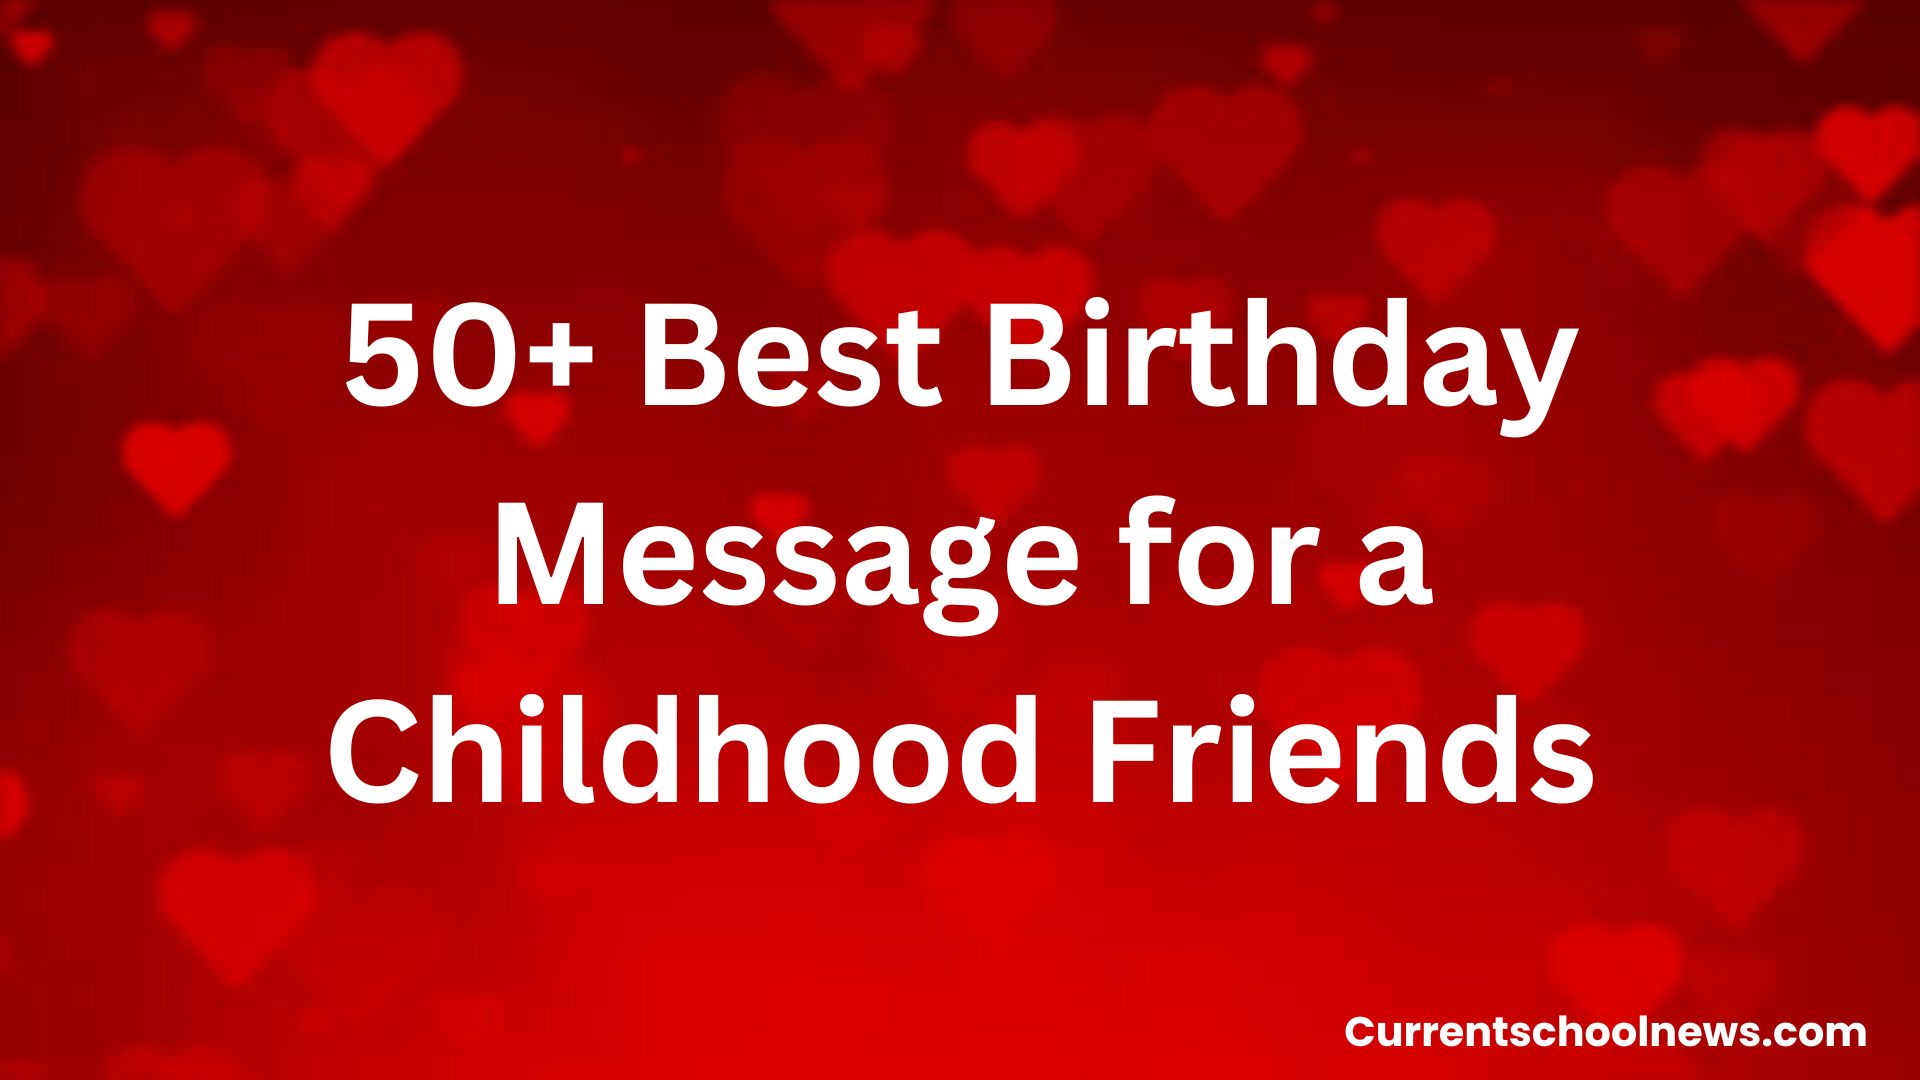 Die besten Geburtstagswünsche für Freunde aus der Kindheit